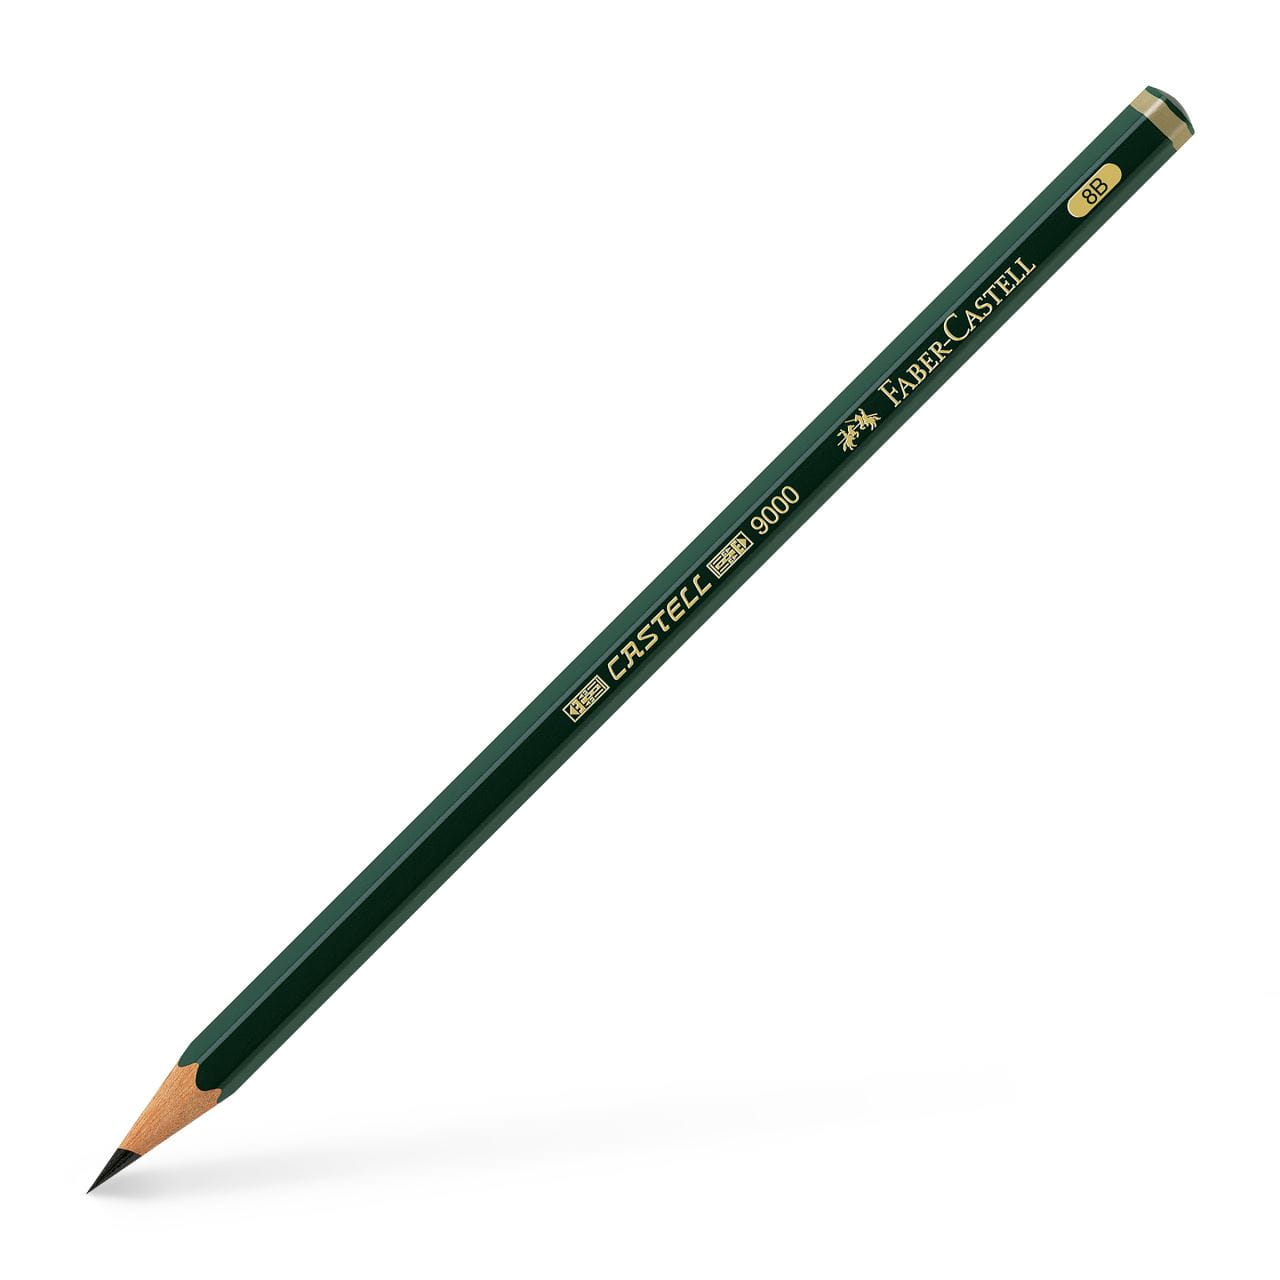 Faber-Castell - Castell 9000 Bleistift, 8B